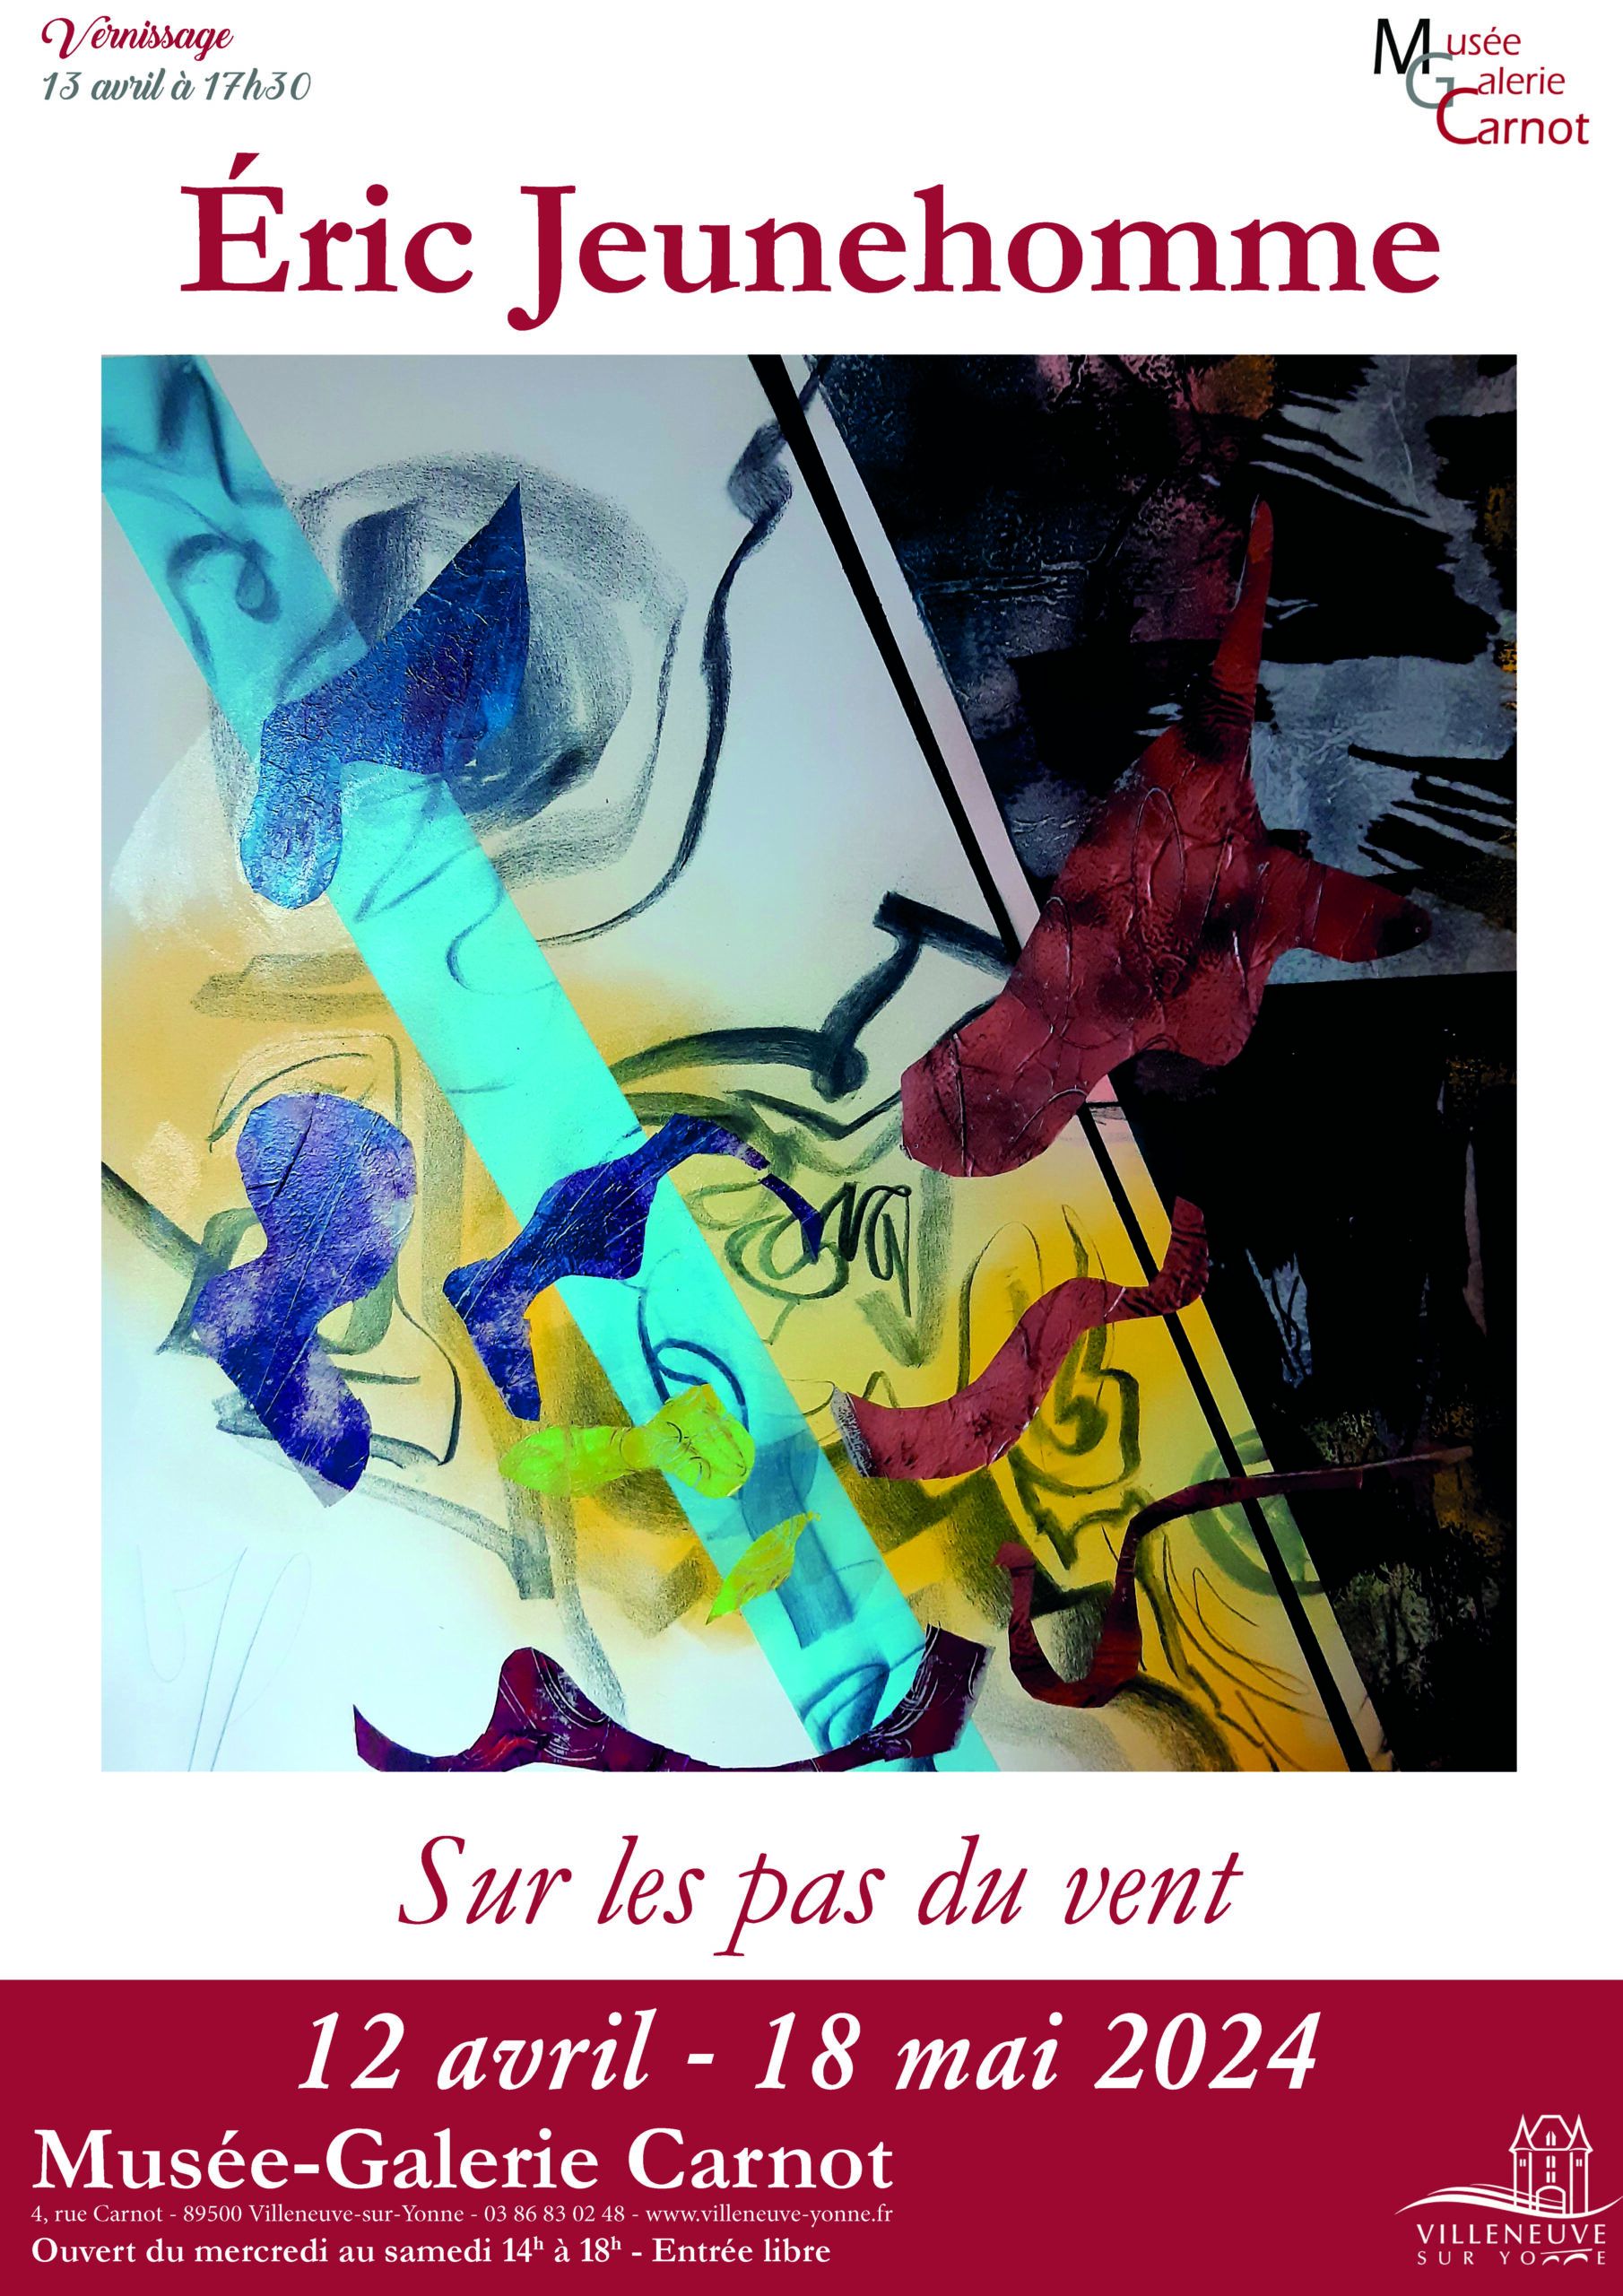 « Sur les pas du vent » L’exposition des œuvres de Eric Jeunehomme,
du 12 avril au 18 mai 2024 au...